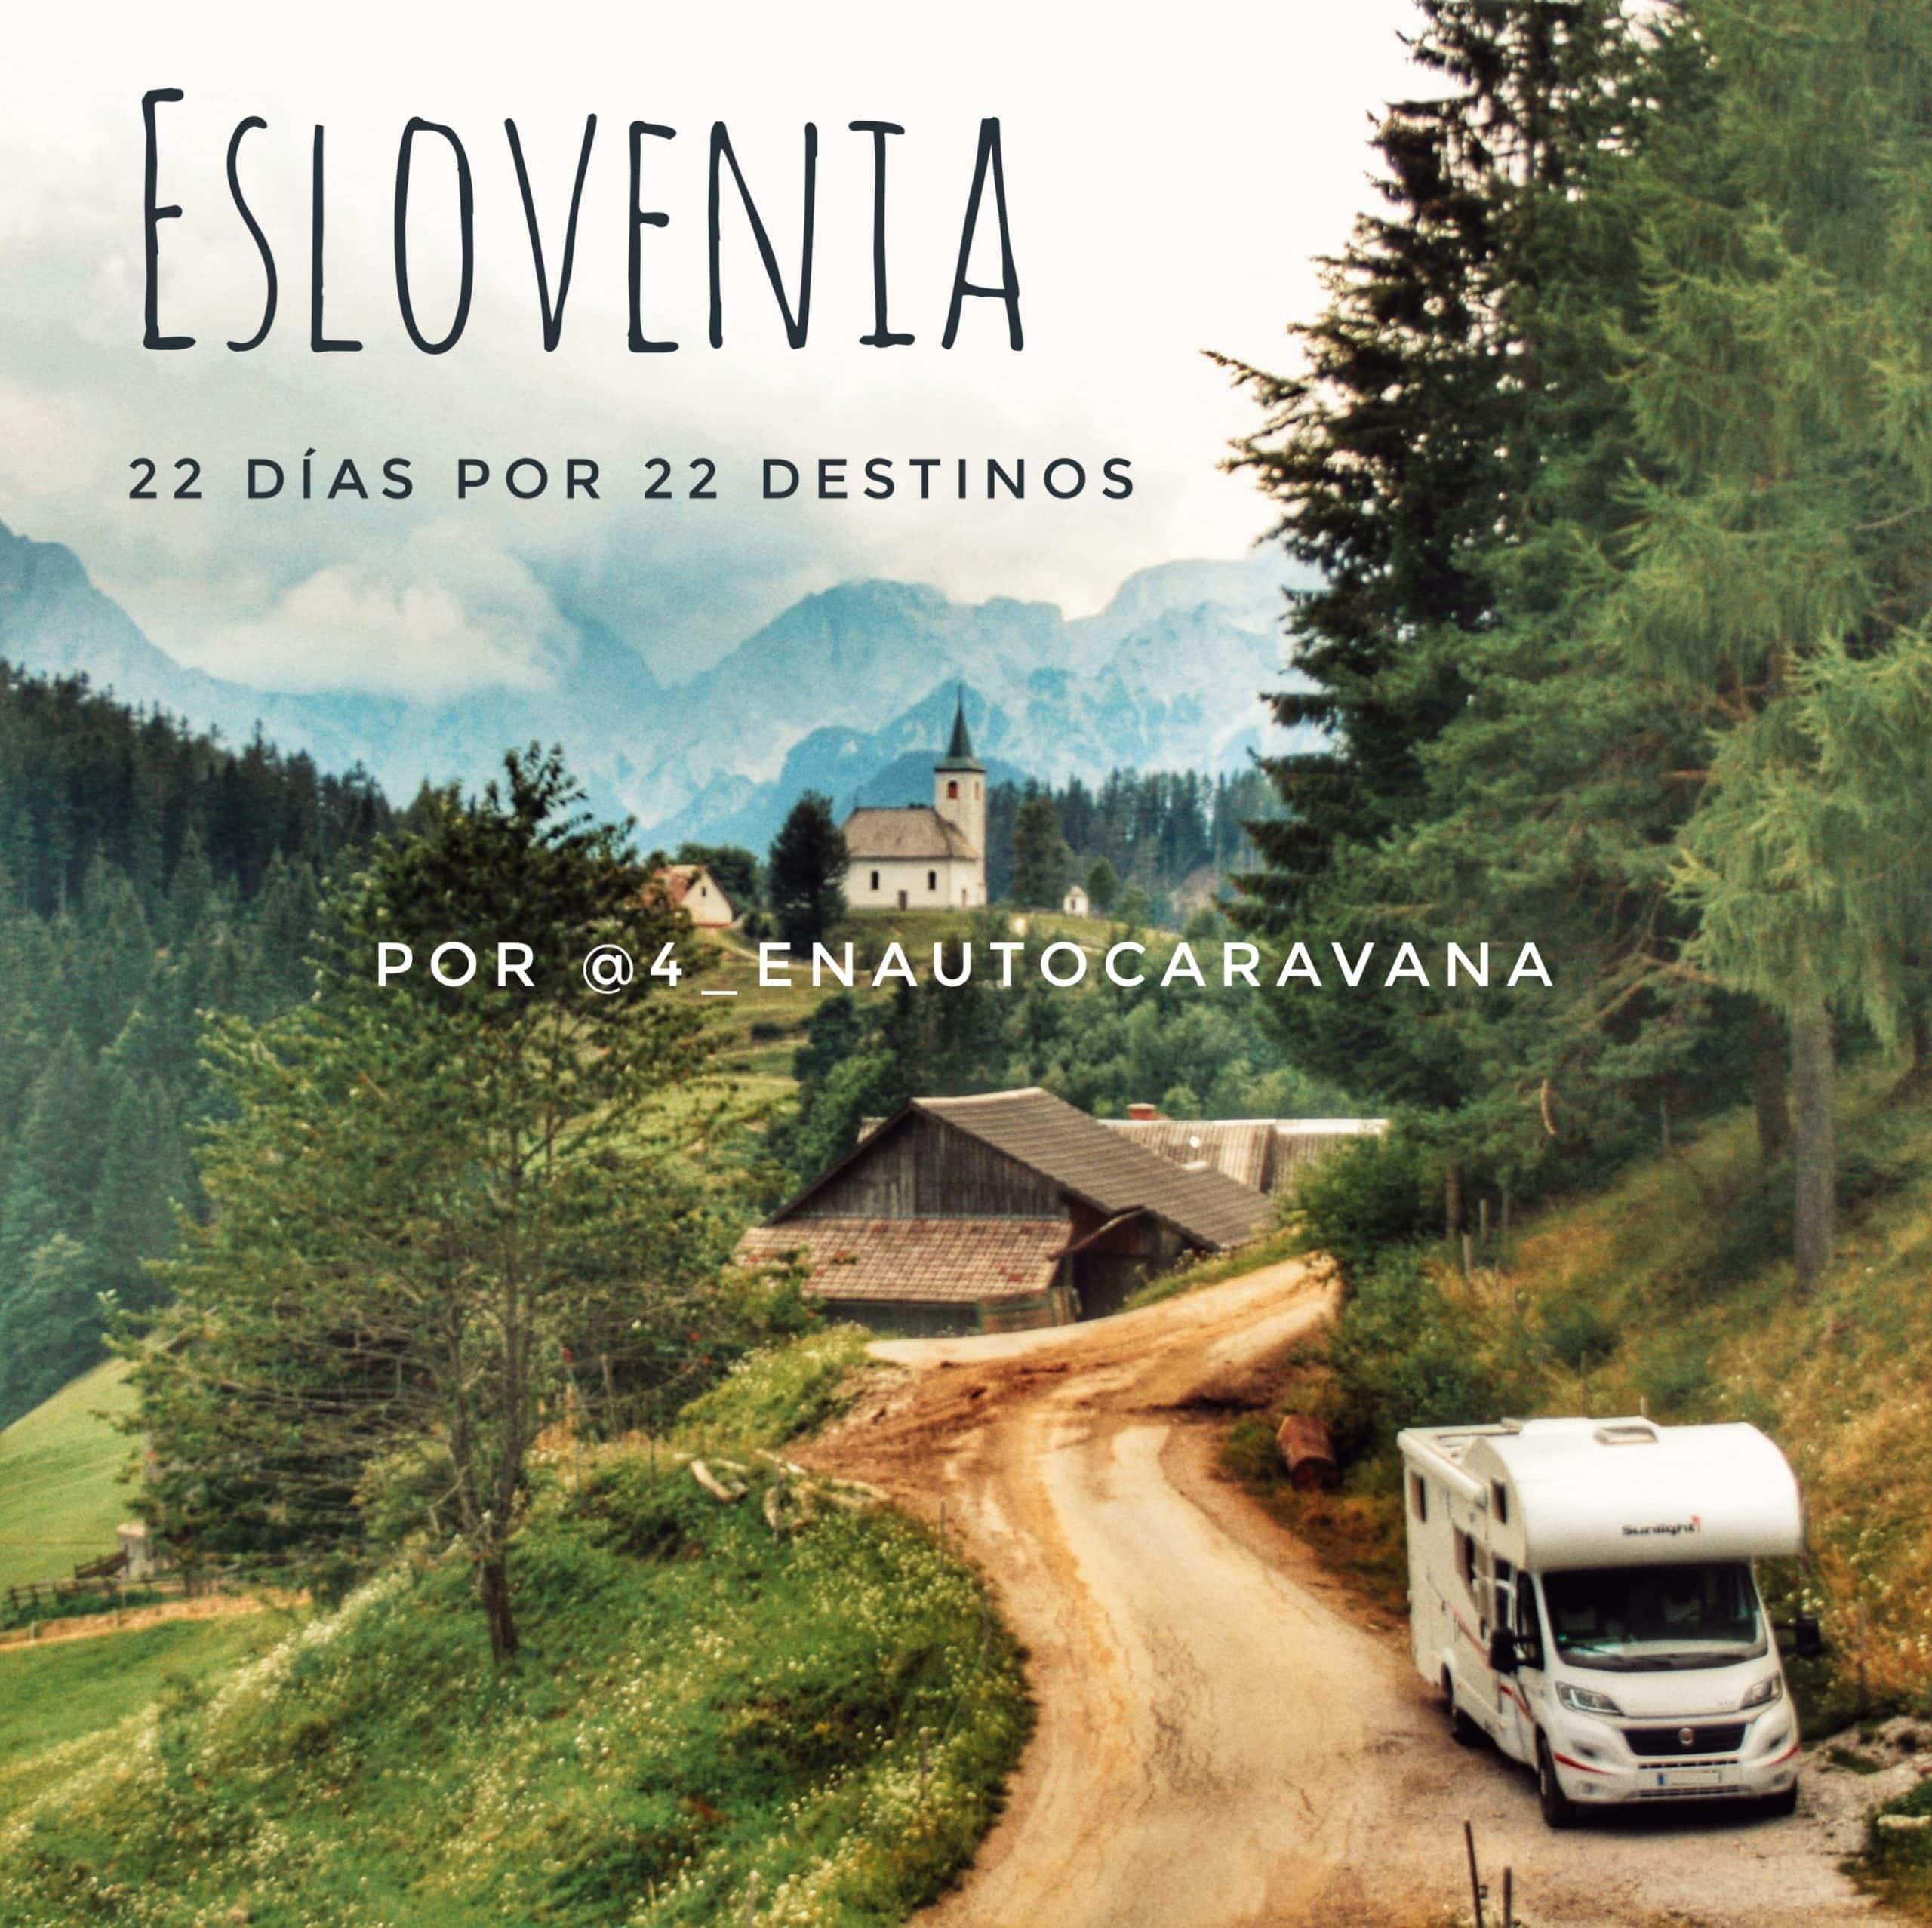 Percorri la Slovenia in camper. 22 destinazioni per 22 giorni